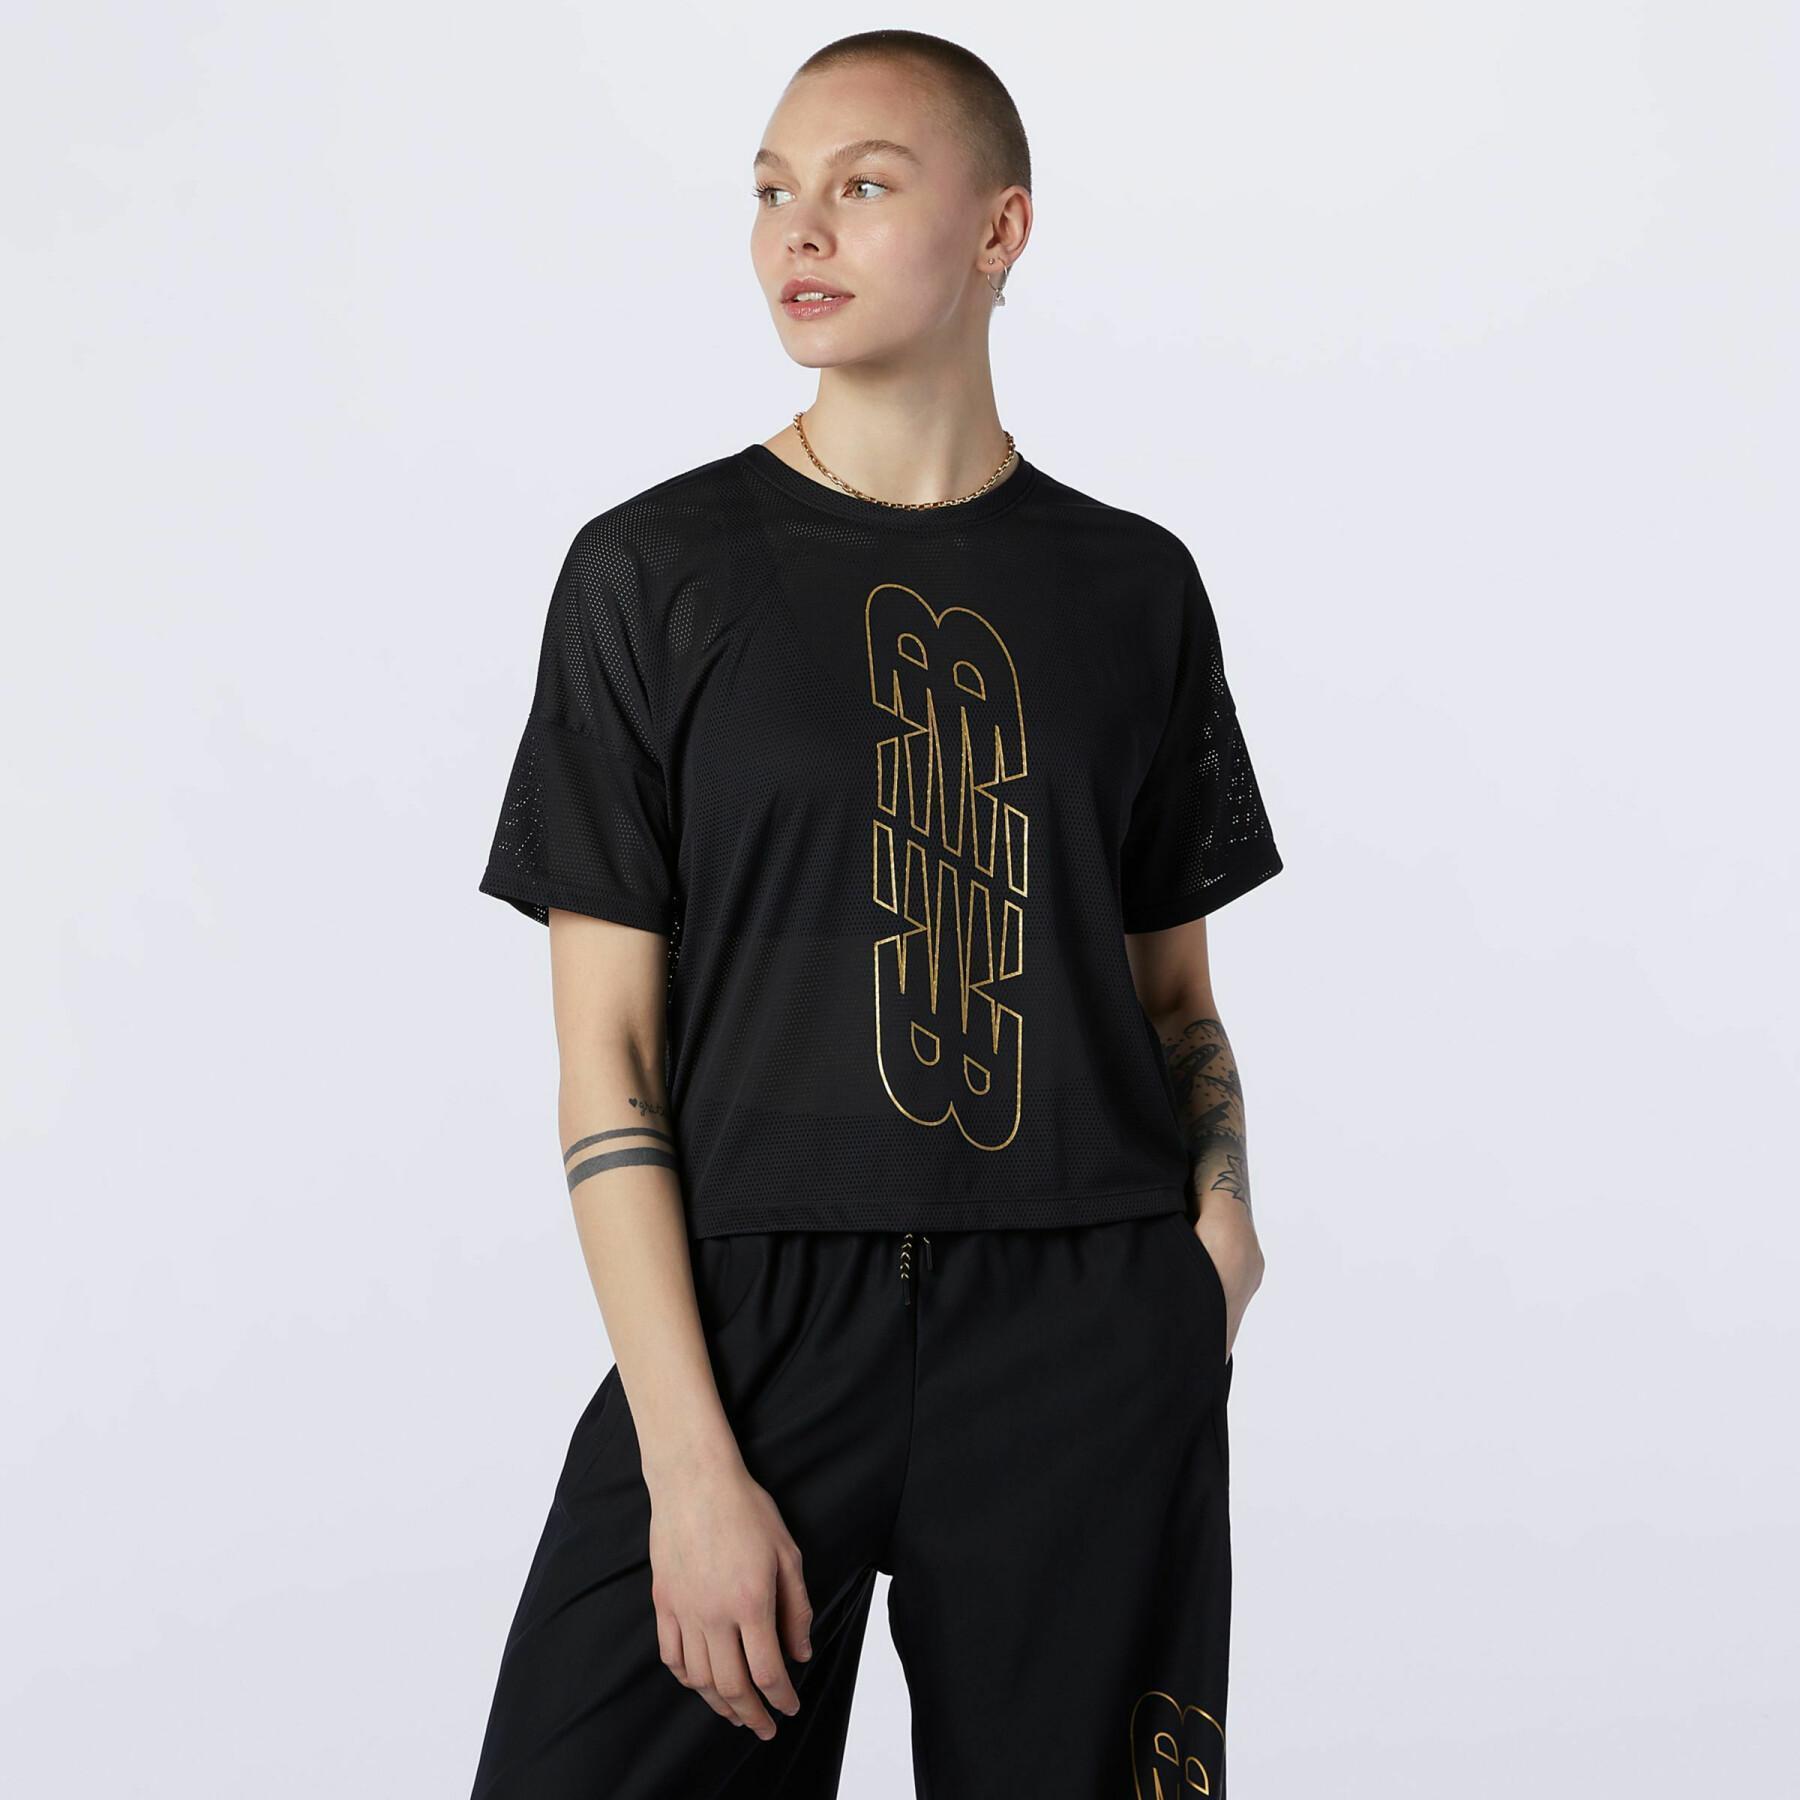 Camiseta feminina New Balance achiever keyhole back graphic